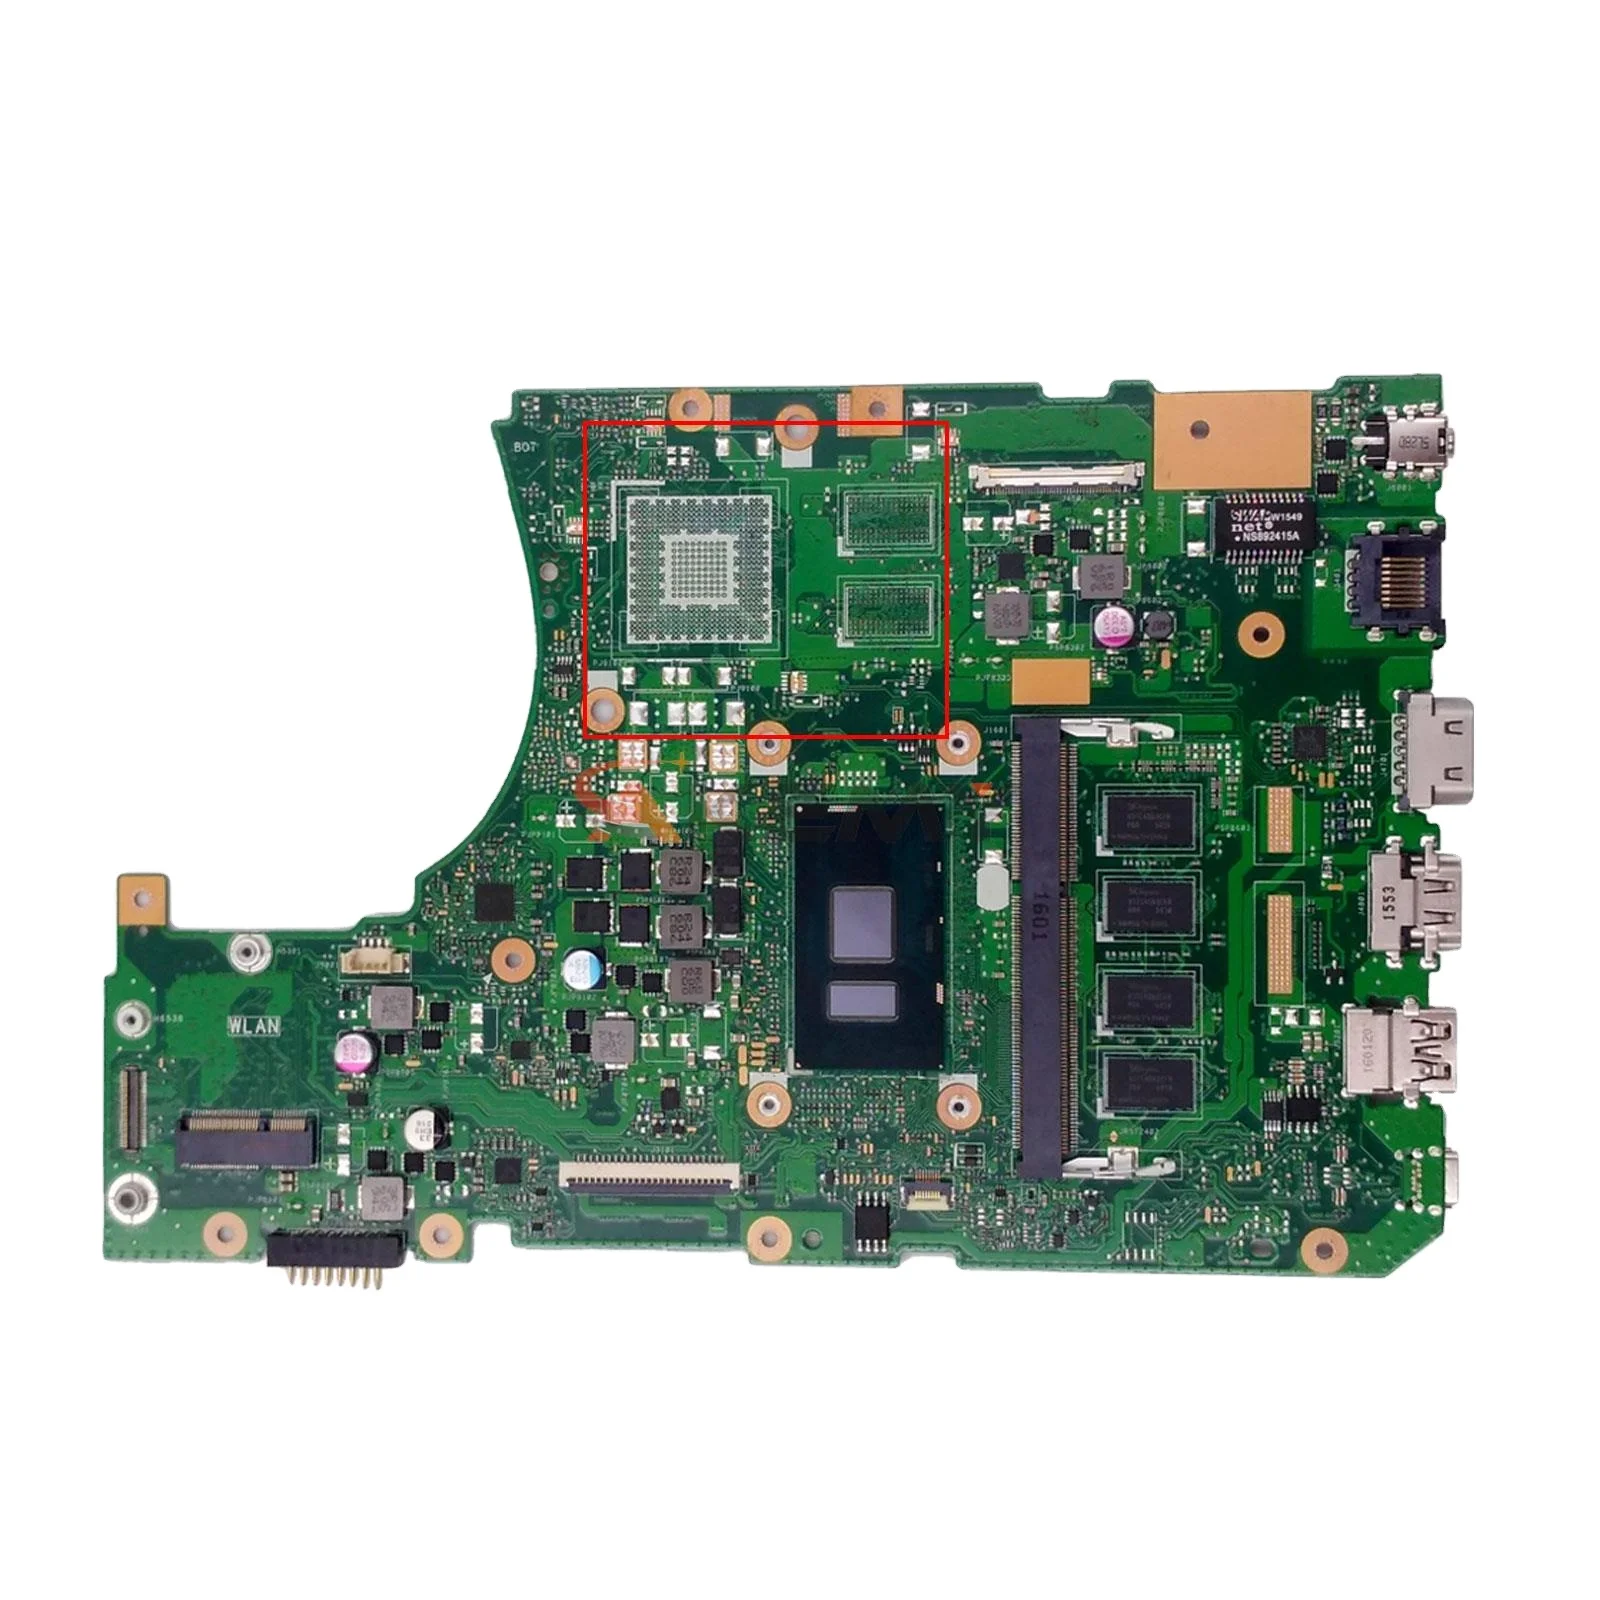 

X556UA Mainboard For ASUS A556U X556U X556UF X556UV X556UAM X556UJ X556UAK Laptop Motherboard I3 I5 I7 CPU DDR3L/DDR4 4GB/8GB